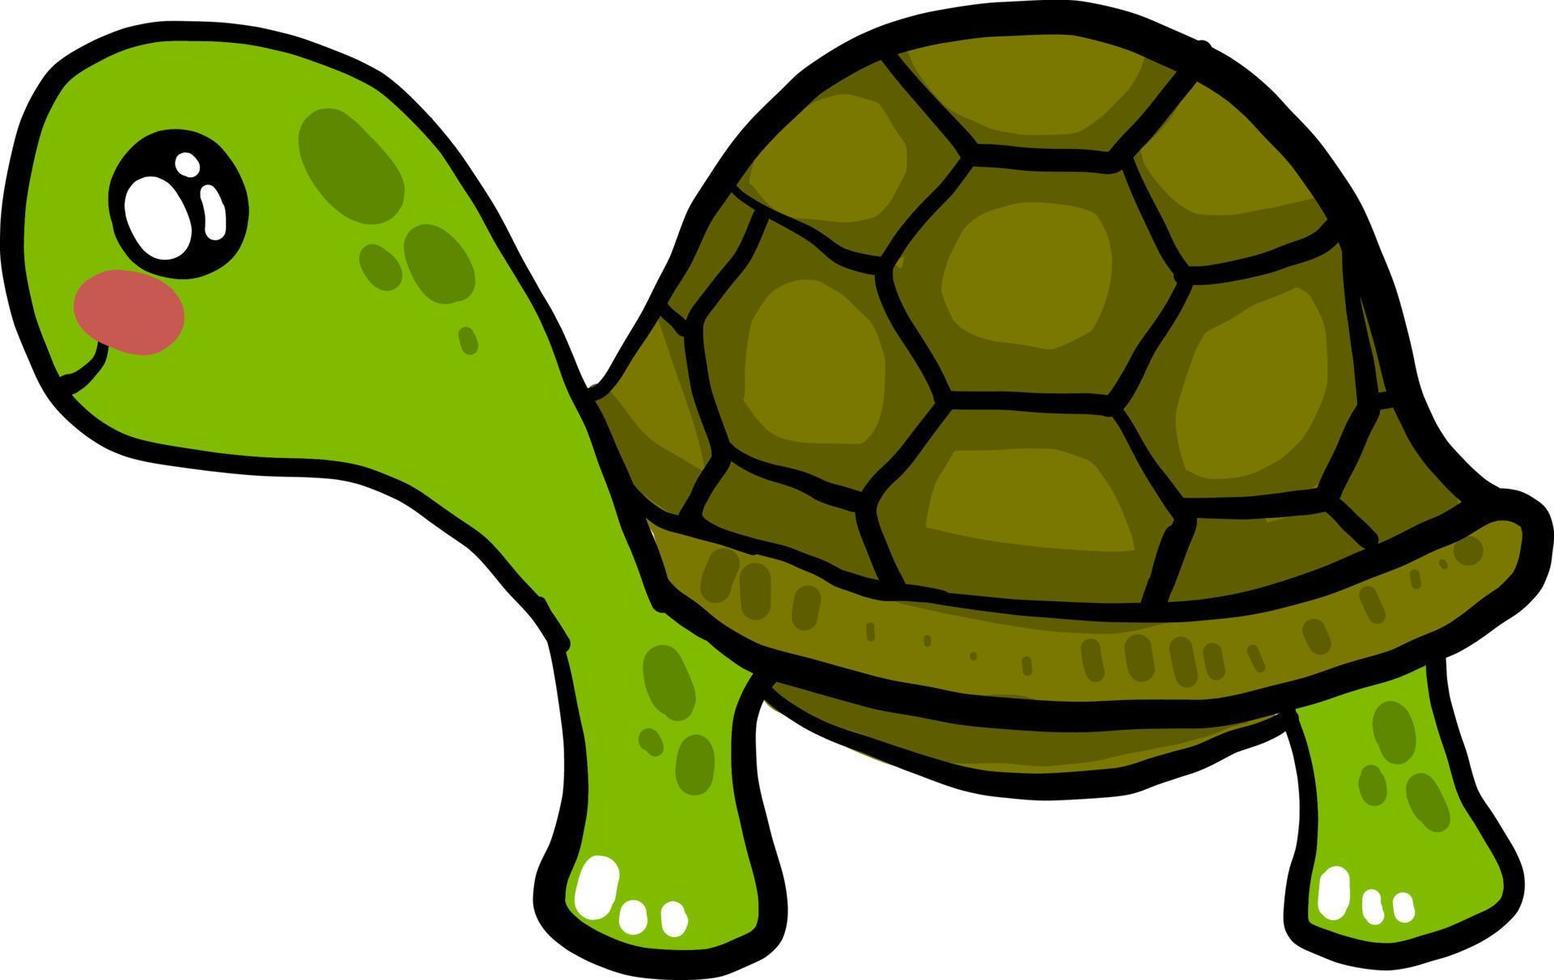 tartaruga verde bonitinha, ilustração, vetor em fundo branco.